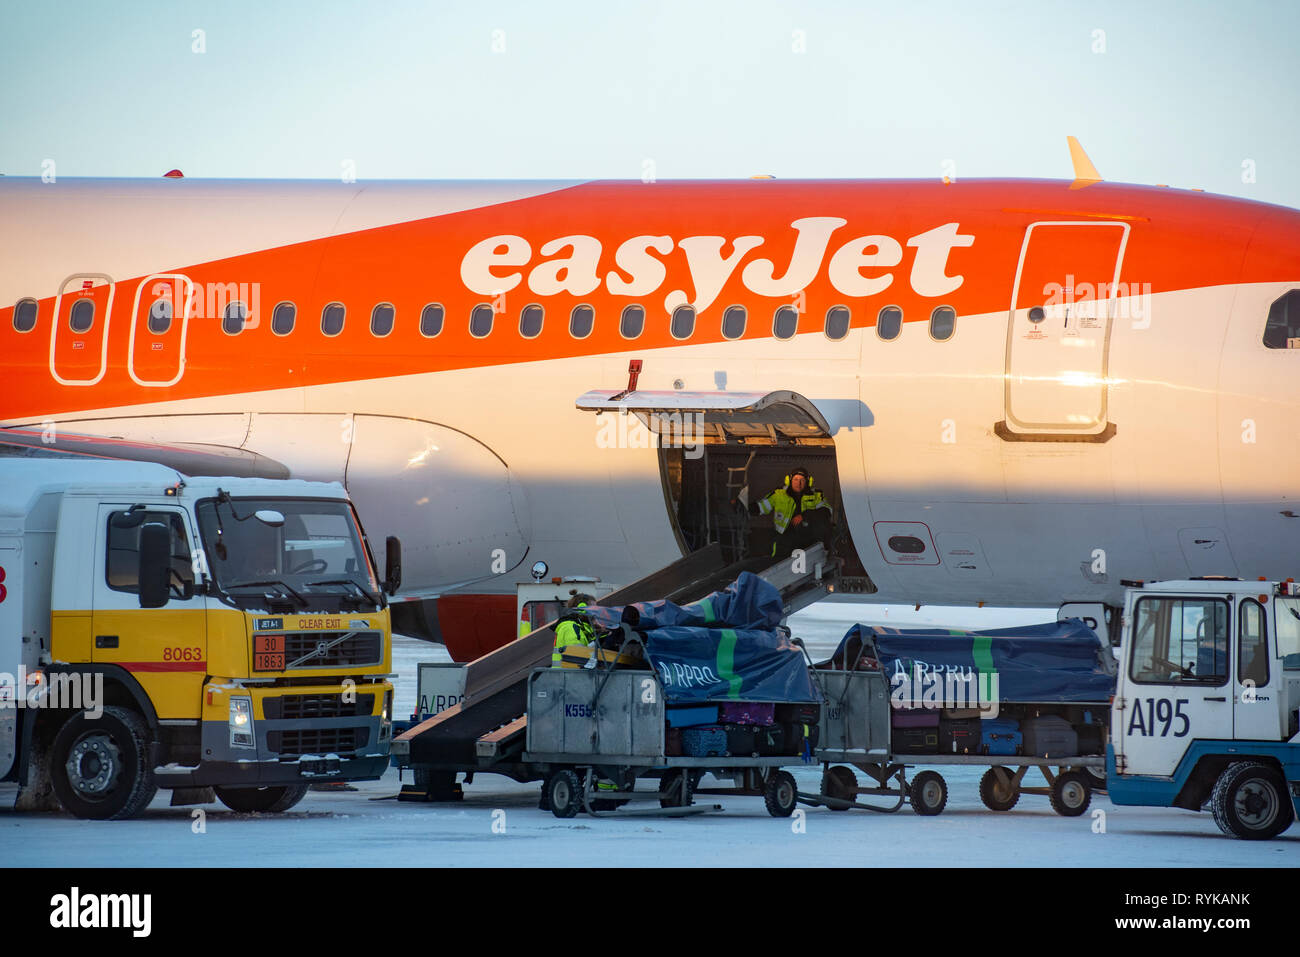 Los trabajadores del aeropuerto quitando las bolsas de equipaje de un avión de easyJet, Kittilä airport signo, Kitilla, Finlandia. Foto de stock